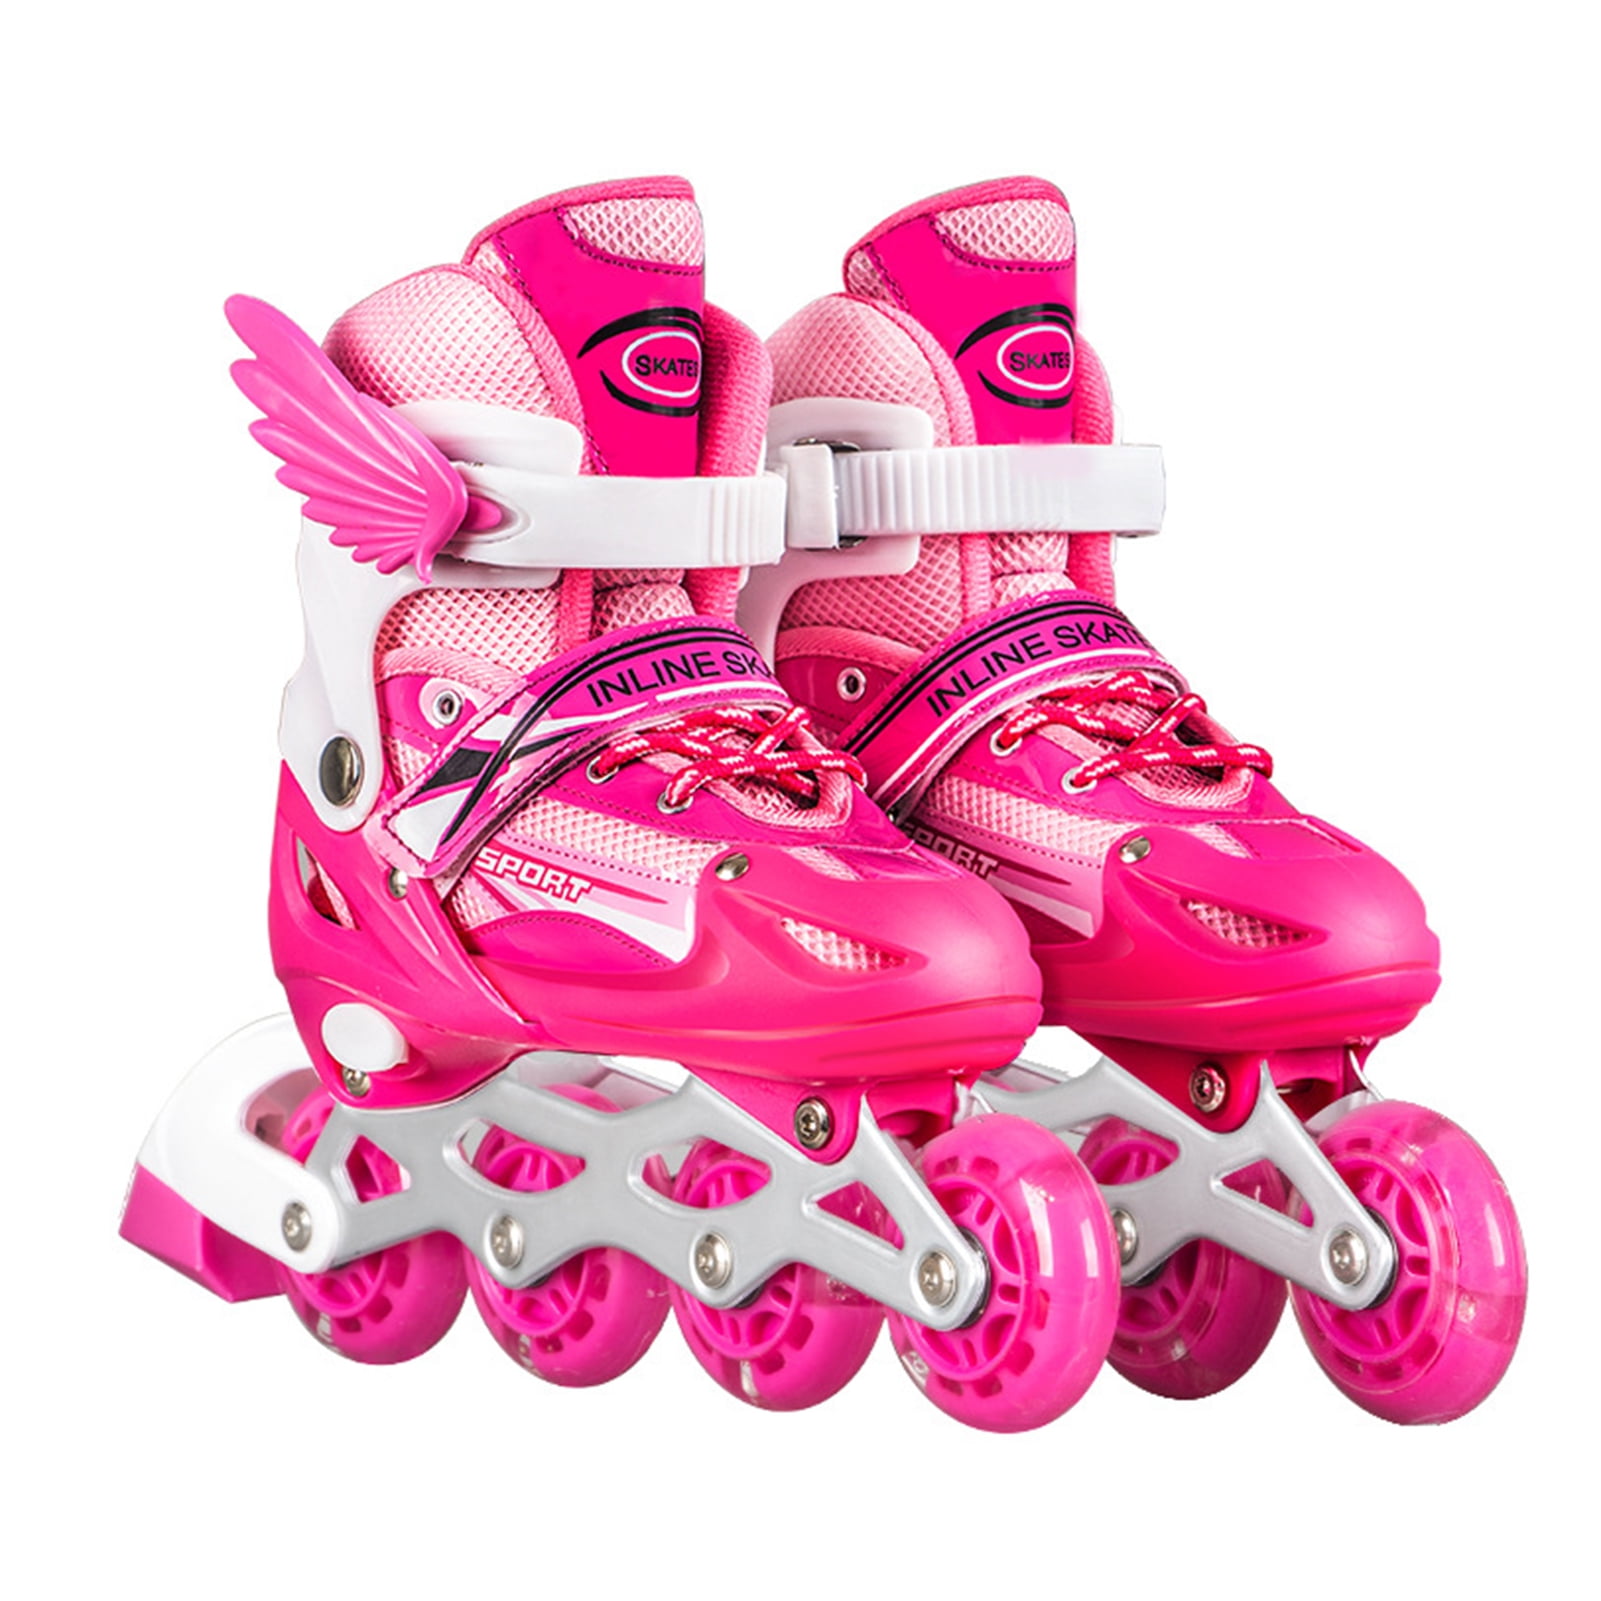 Megawheels Inline Skates for Unisex Kids Size 2-5 Adjustable Roller Blades Gifts 